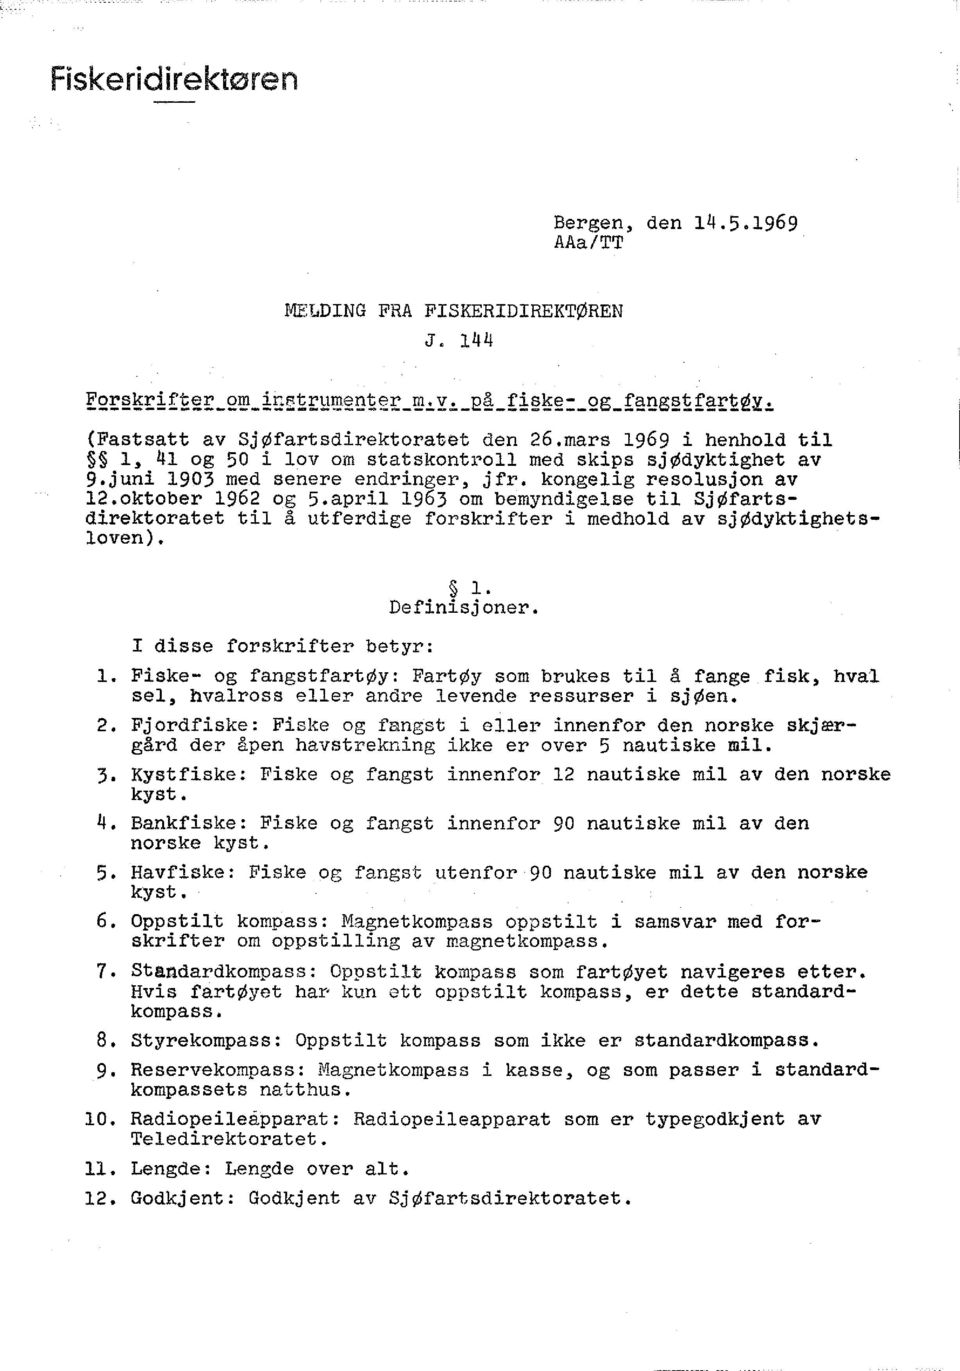 april 1963 om bemyndigelse til SjØfartsdirektoratet til å utferdige forskrifter i medhold av sjødyktighetsloven). 1. Definisjoner. I disse forskrifter betyr: 1.